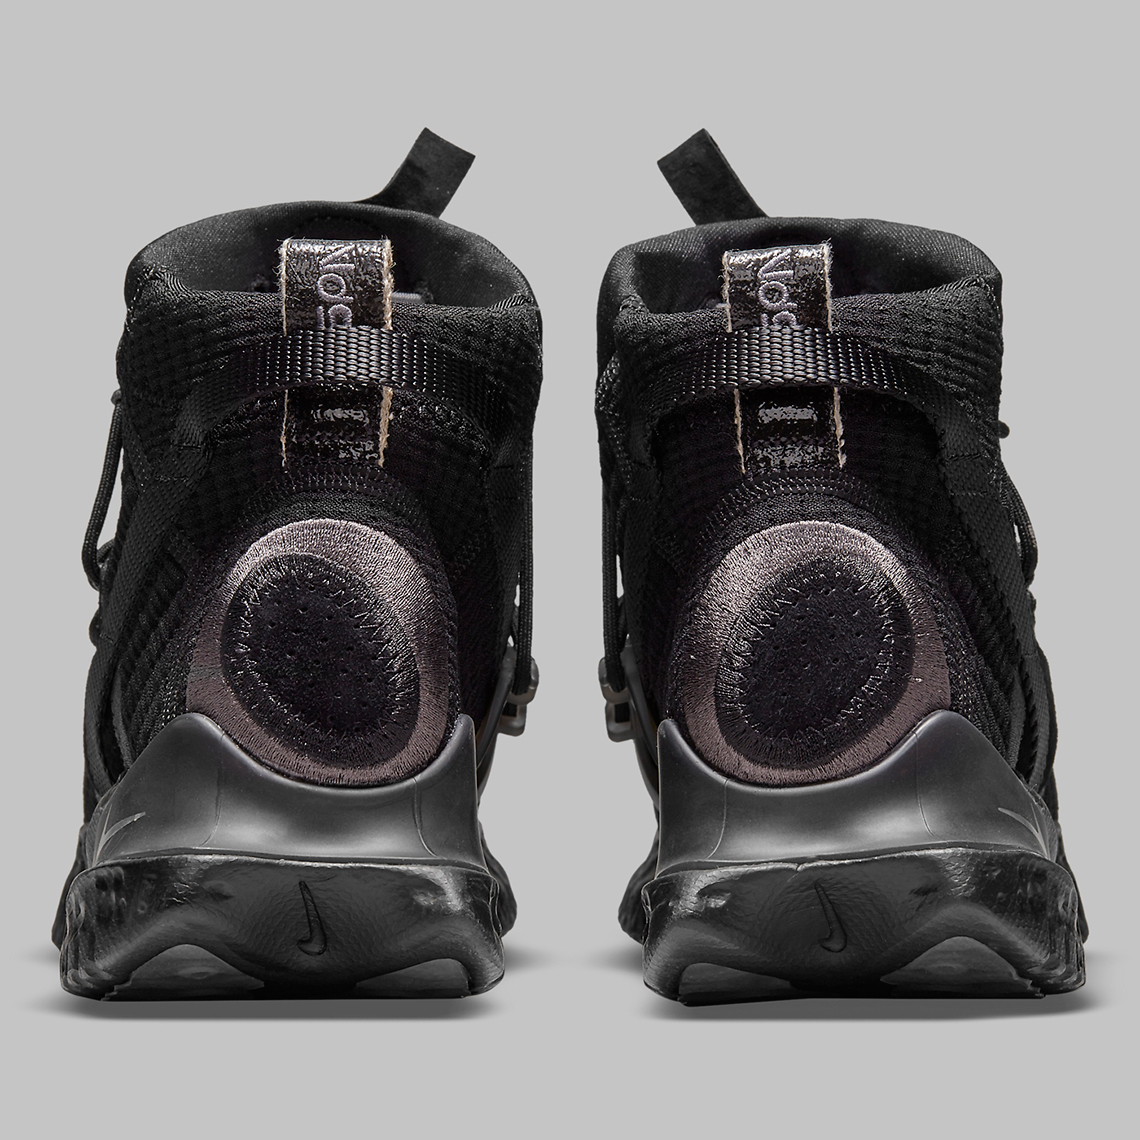 Nike Ispa Flow 2020 Se Black Cw3045 002 Release Date 1